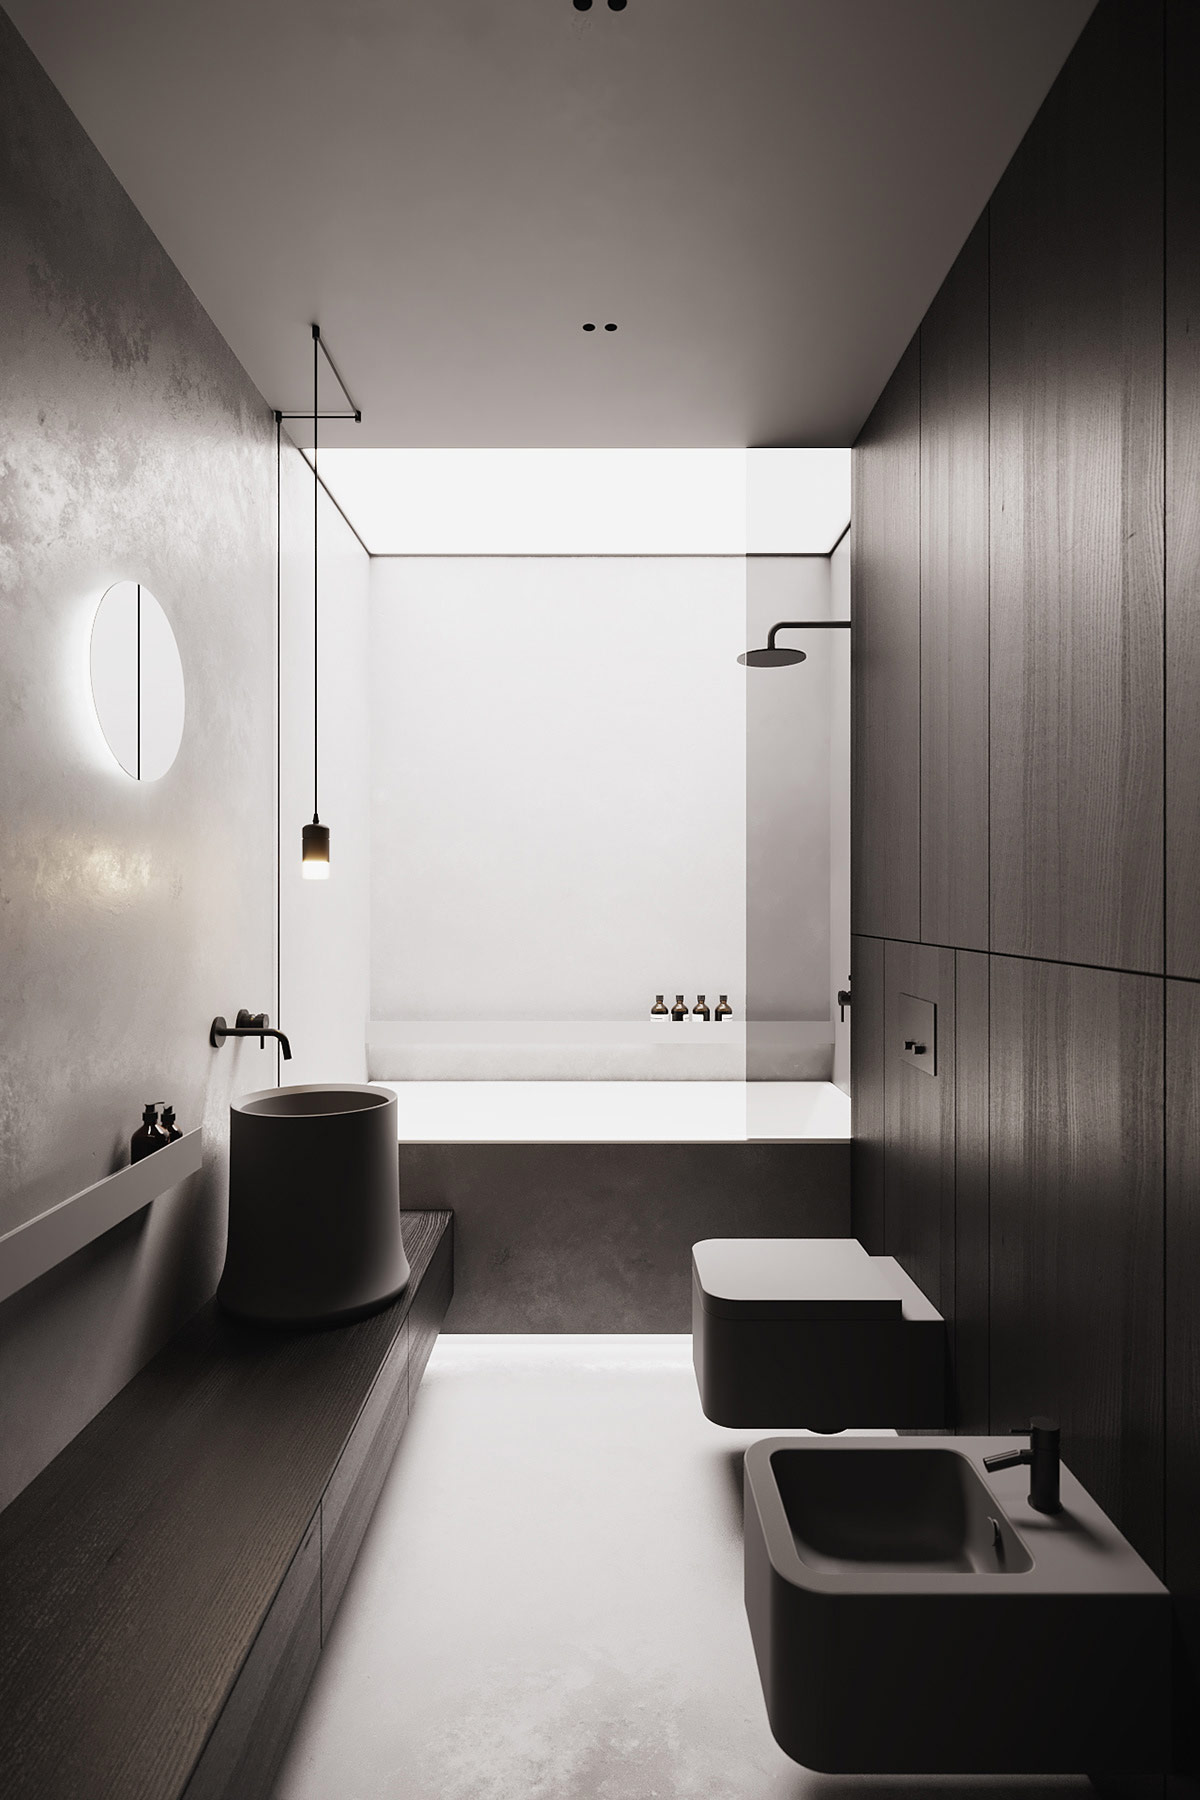 Phòng tắm được thiết kế tối giản và ánh sáng vẫn là yếu tố chi phối chủ đạo